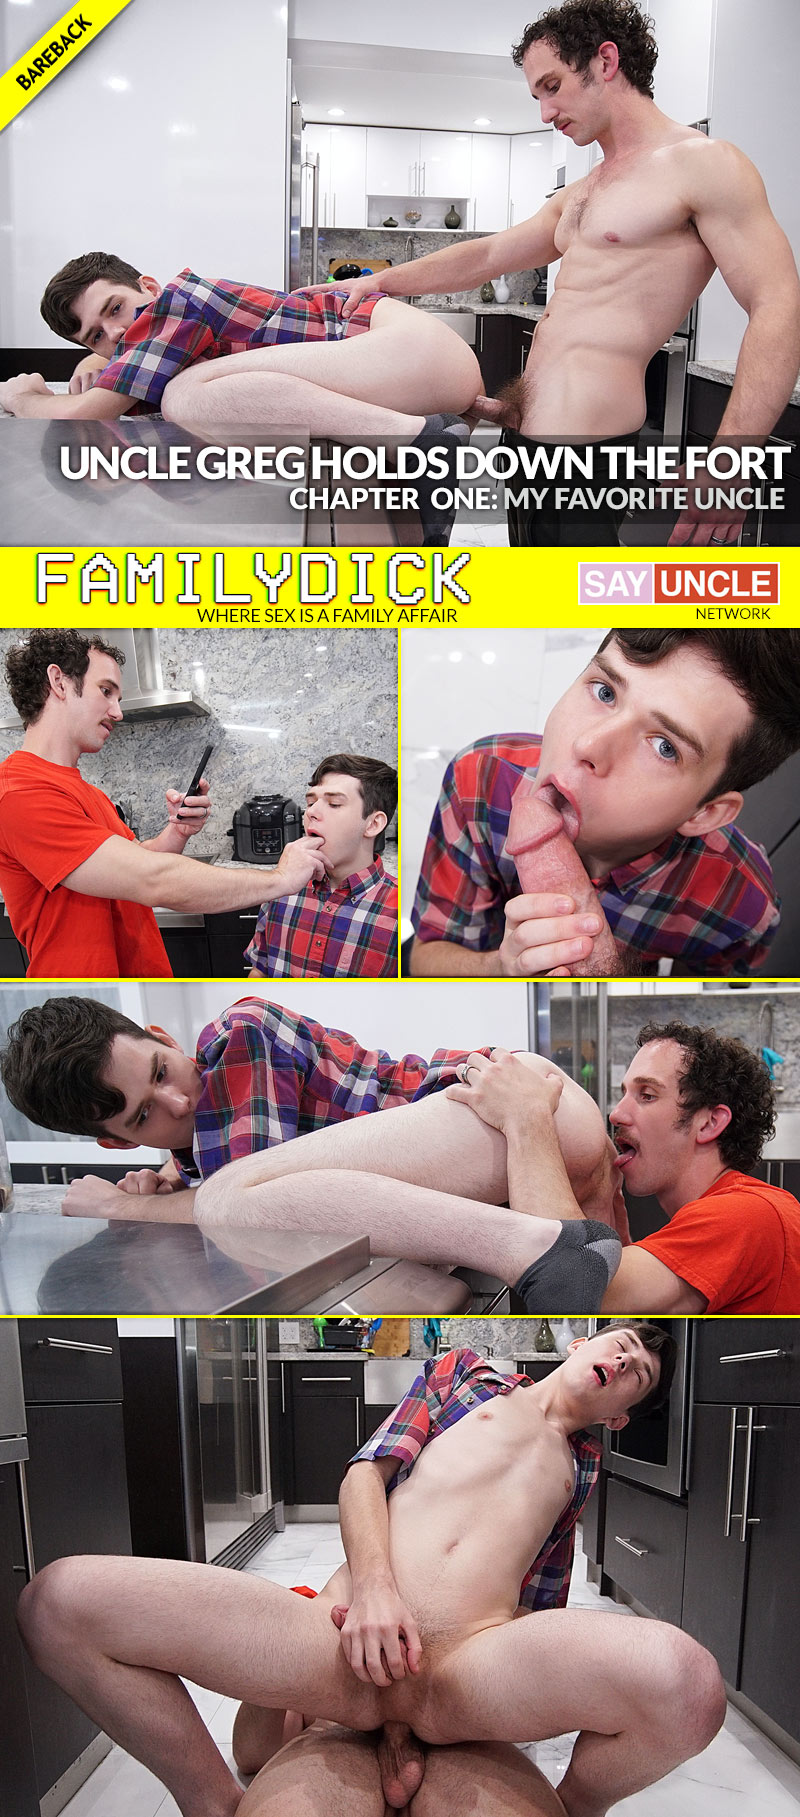 Uncle Greg Holds Down the Fort: My Favorite Uncle (Greg McKeon Fucks Dakota Lovell) at FamilyDick